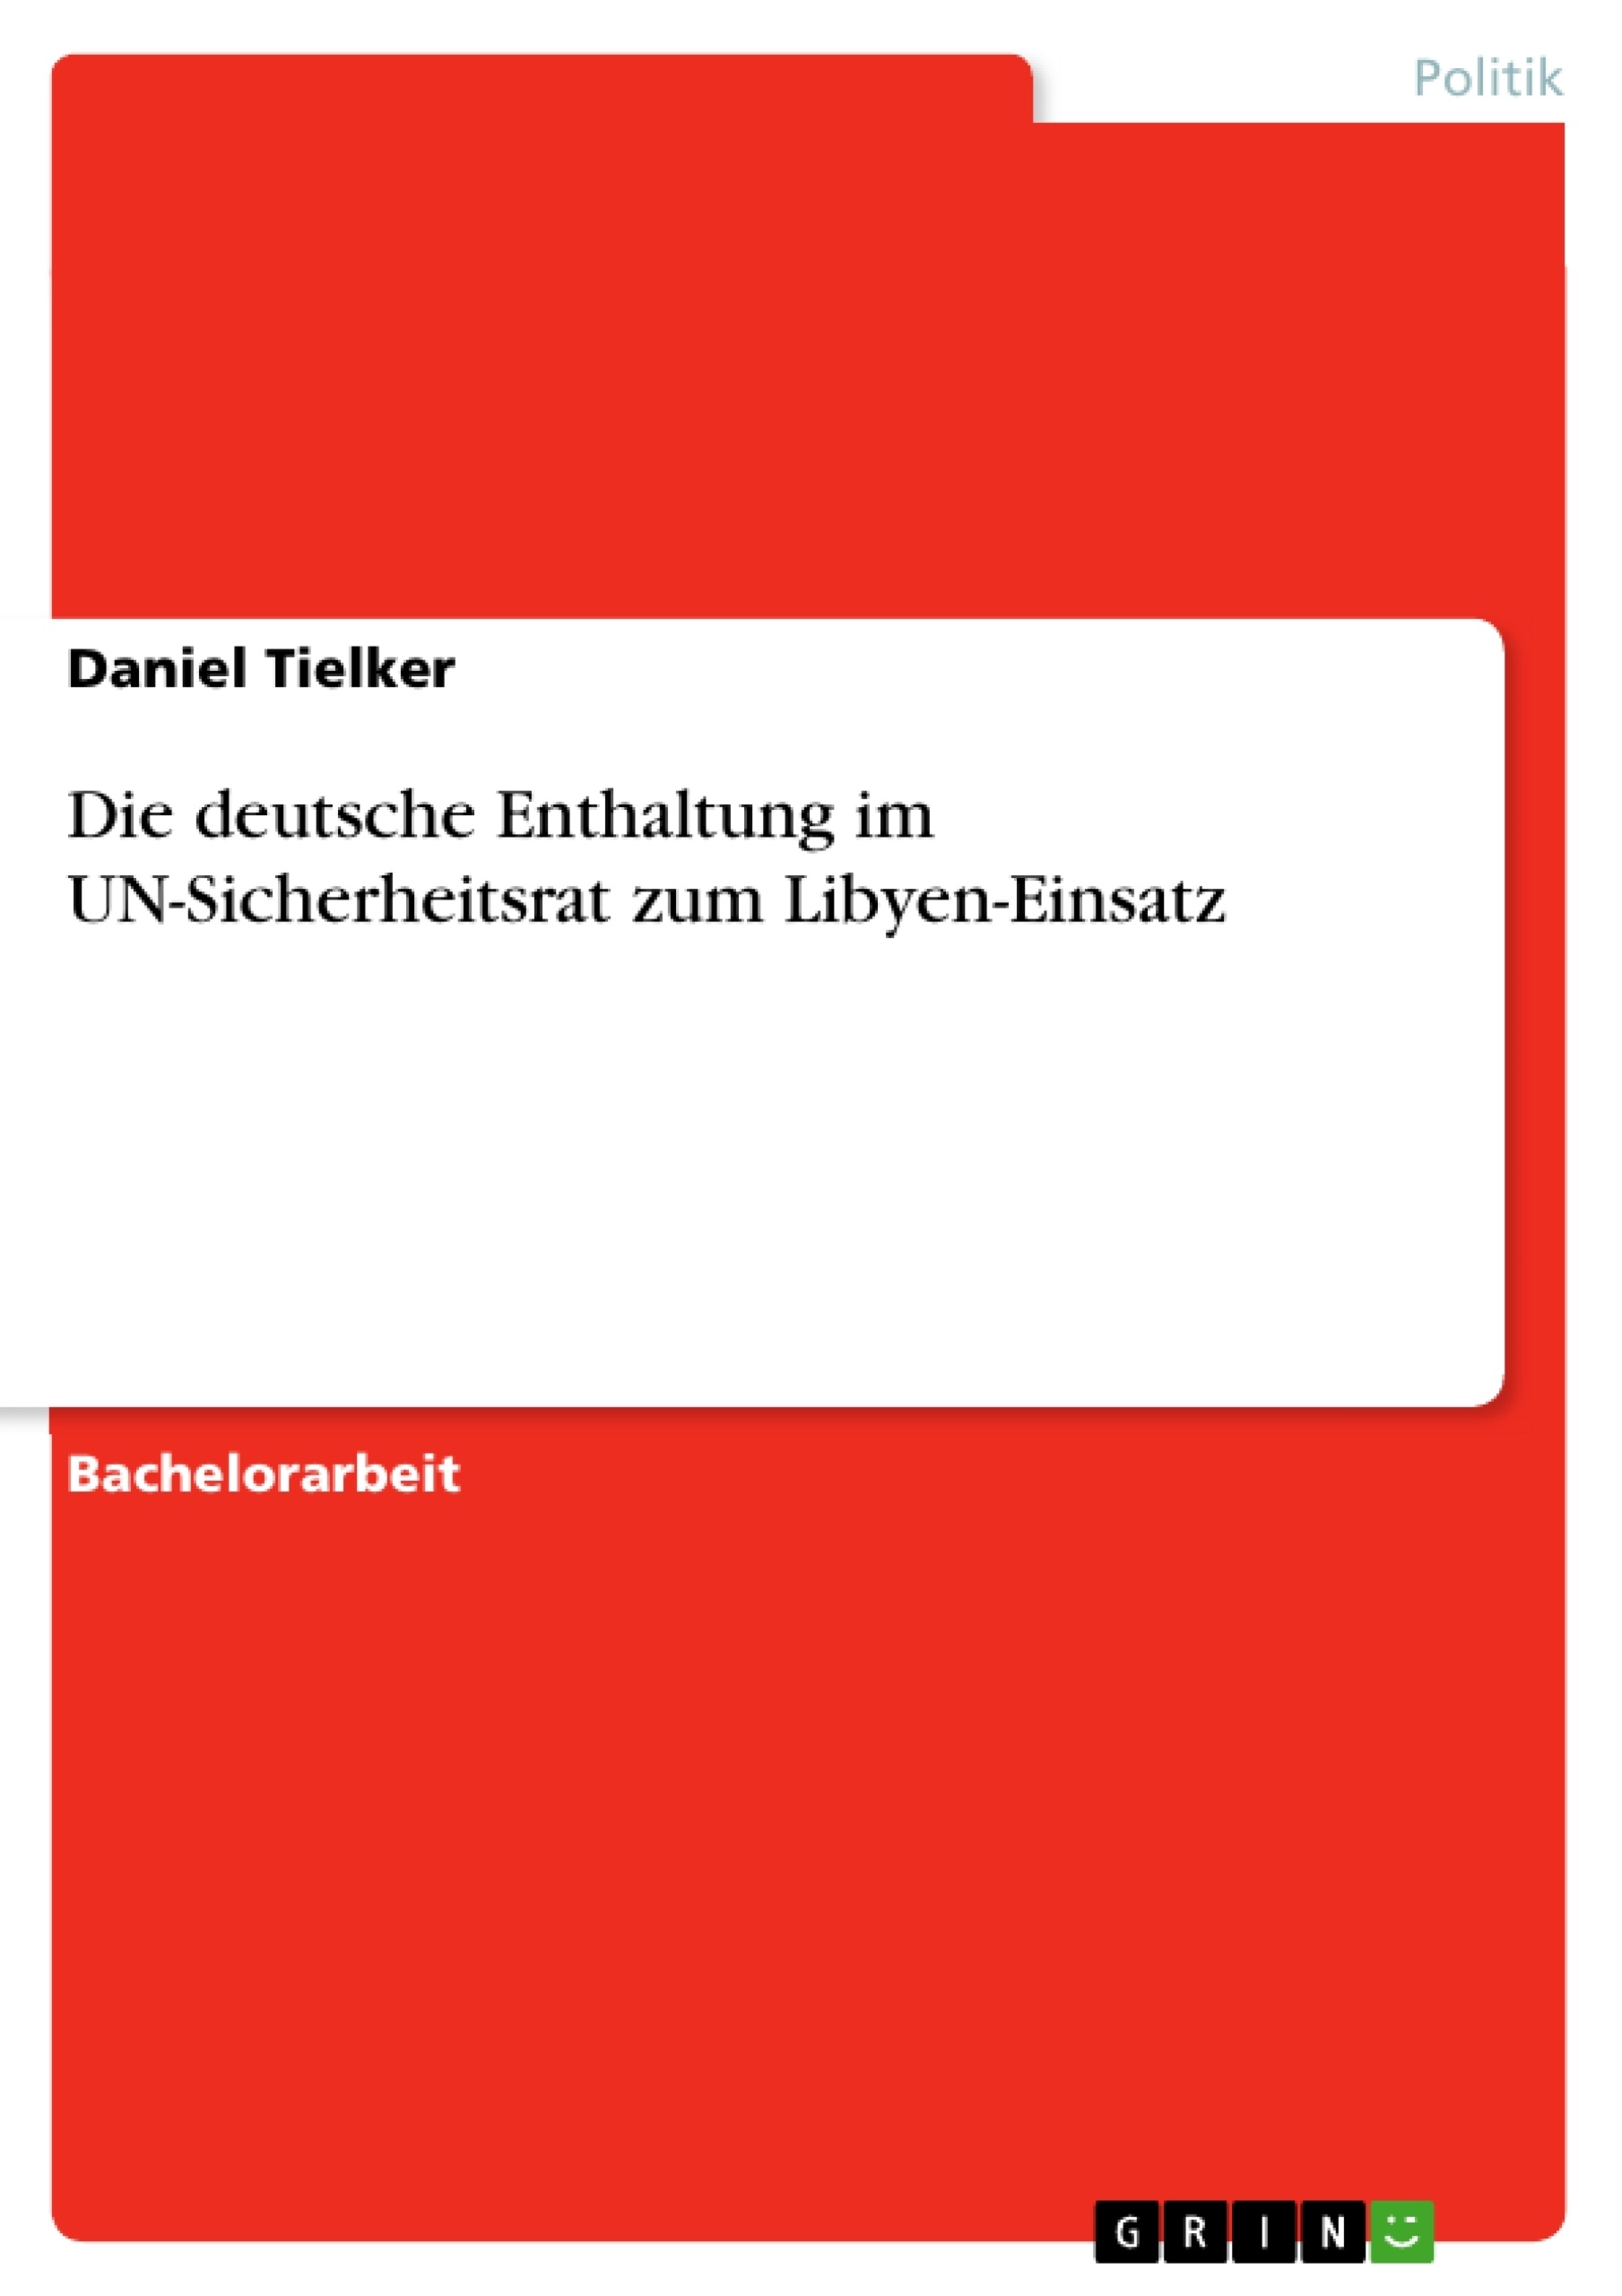 Titre: Die deutsche Enthaltung im UN-Sicherheitsrat zum Libyen-Einsatz